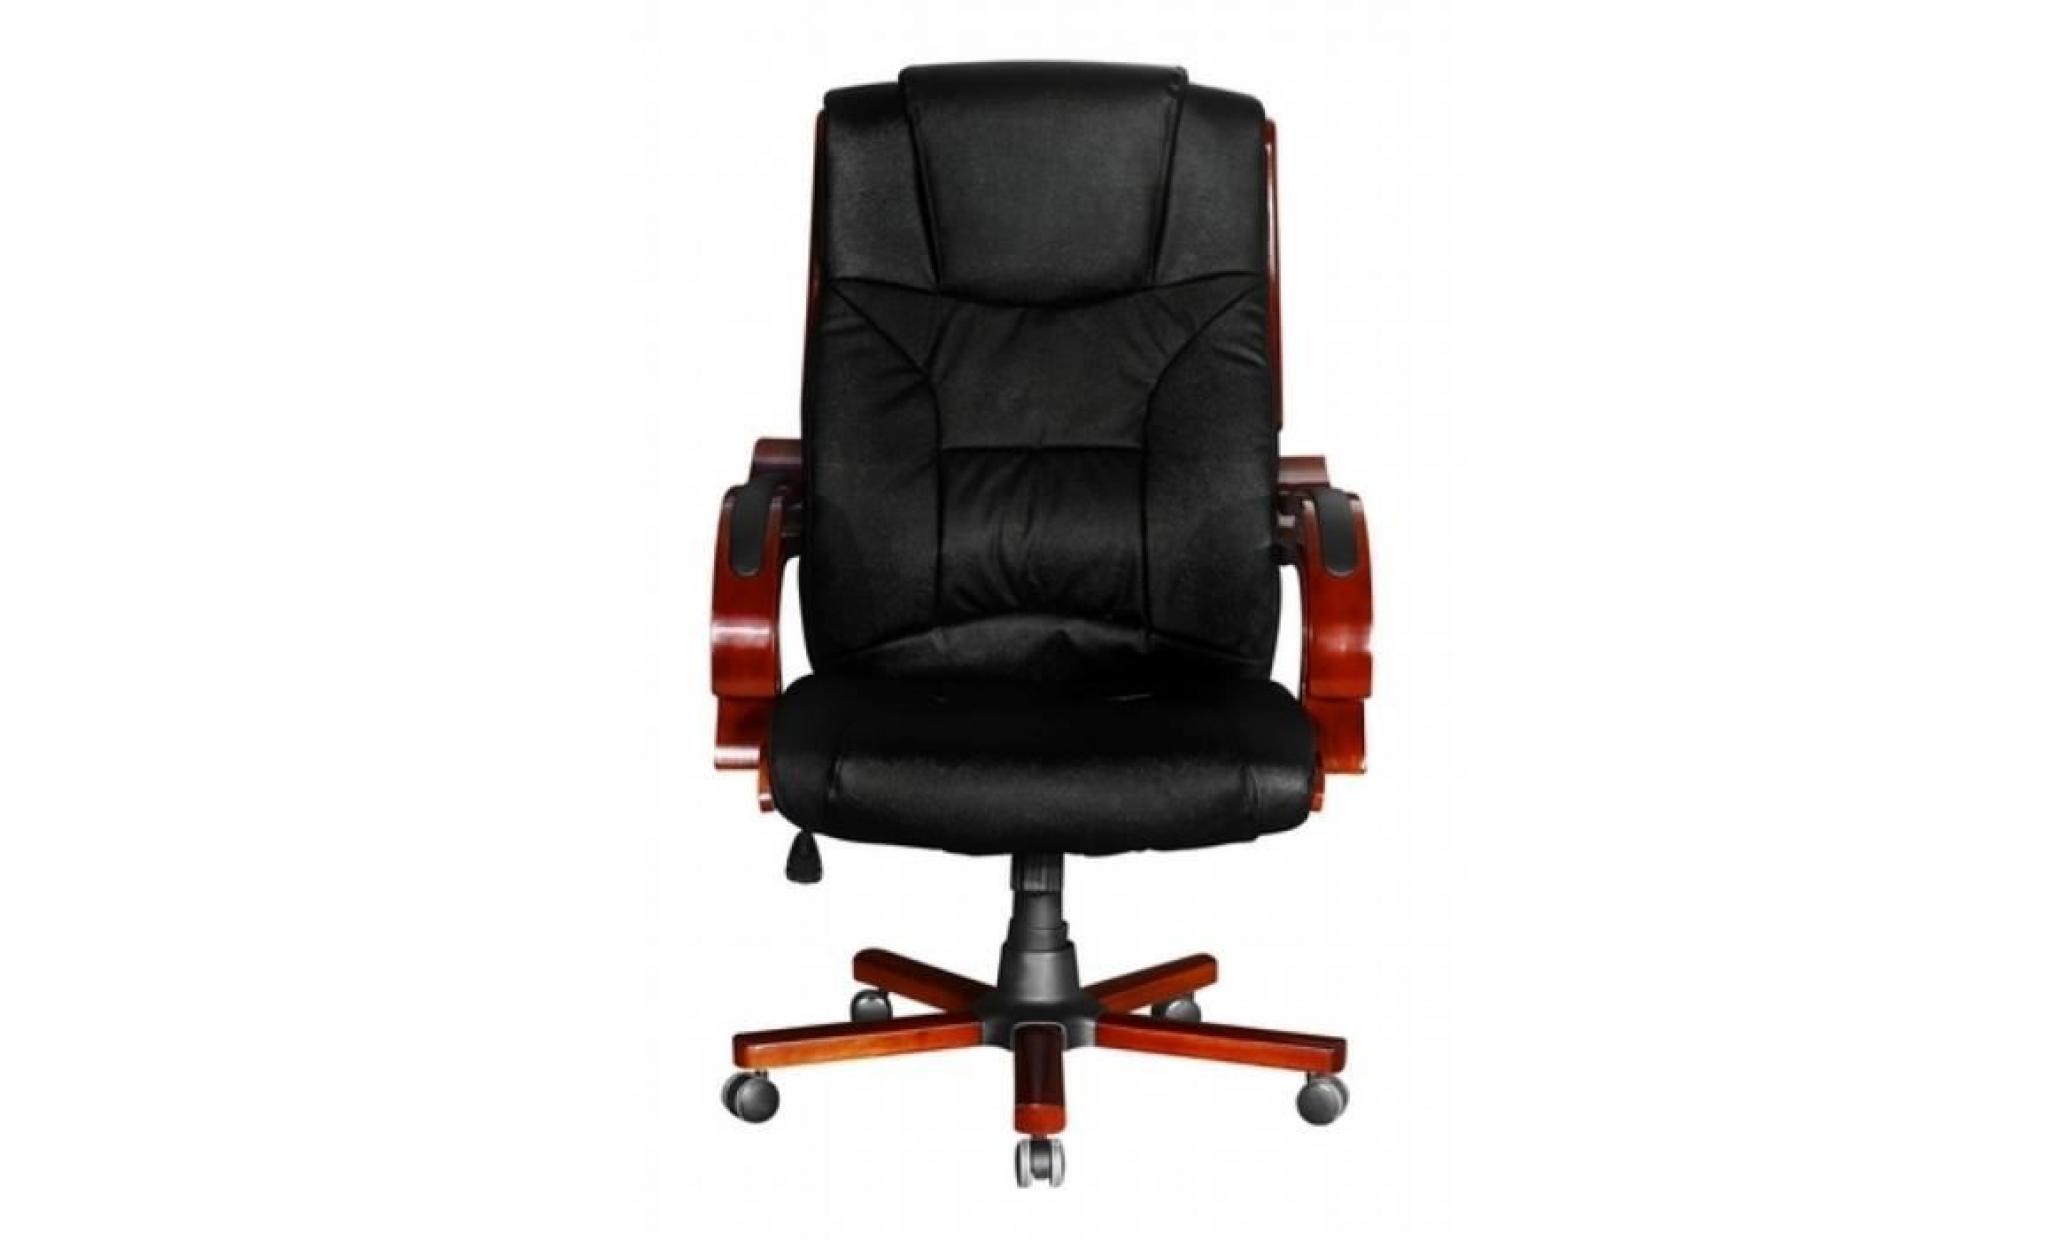 fauteuil direction chaise en cuir noir design rétro l moderne confort pour bureau réglable pratique pas cher